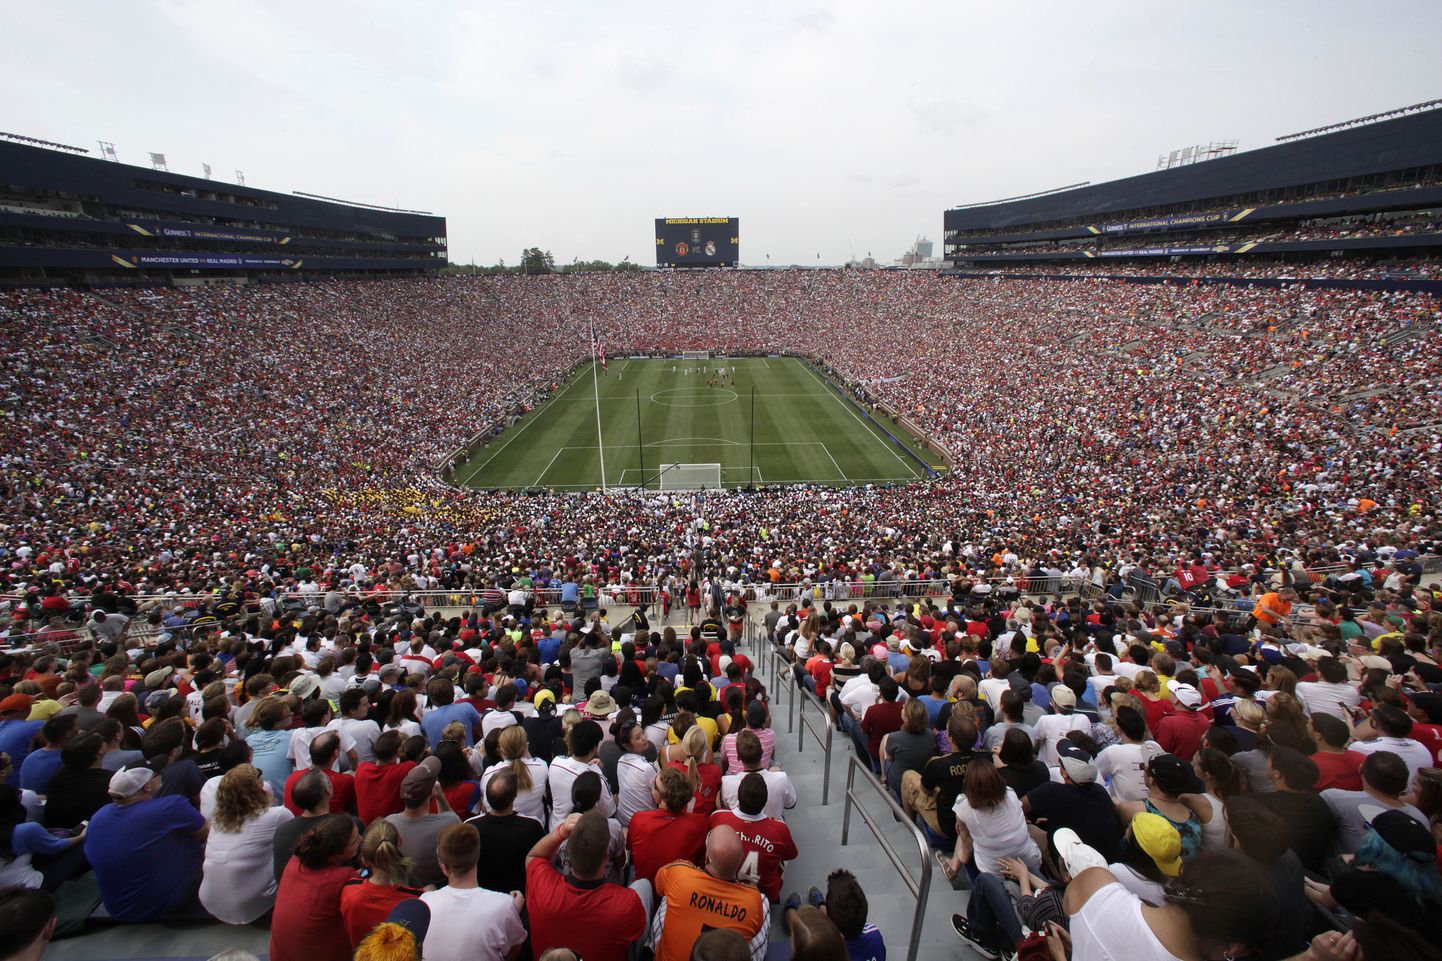 Manchester Unitedi ja Madridi Reali mängu vaatas Ann Arbori staadionil 109 318 inimest.